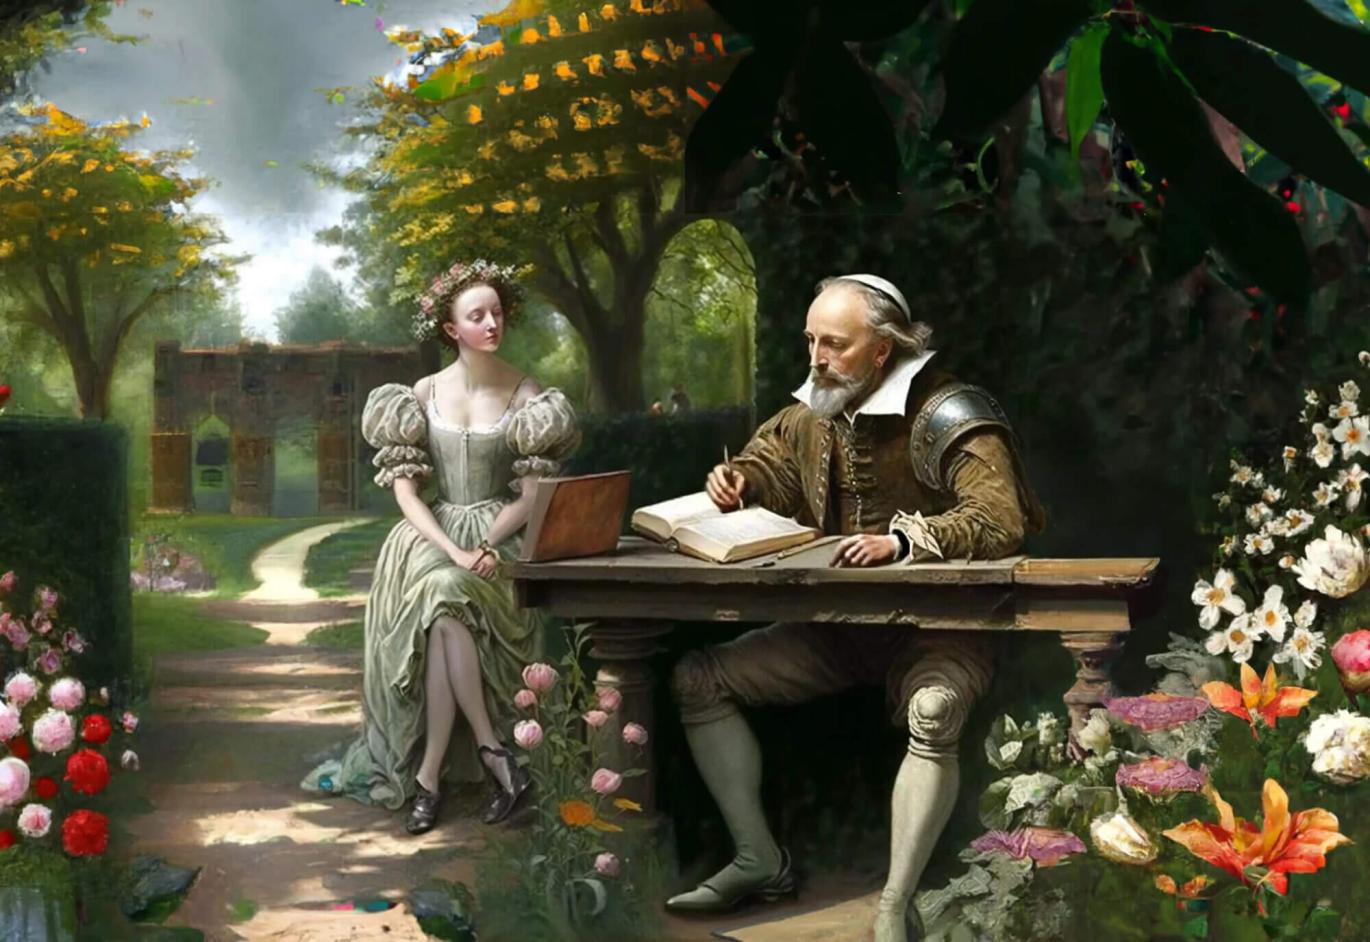 莎士比亚的十四行诗如何探索爱情、美和死亡的主题？